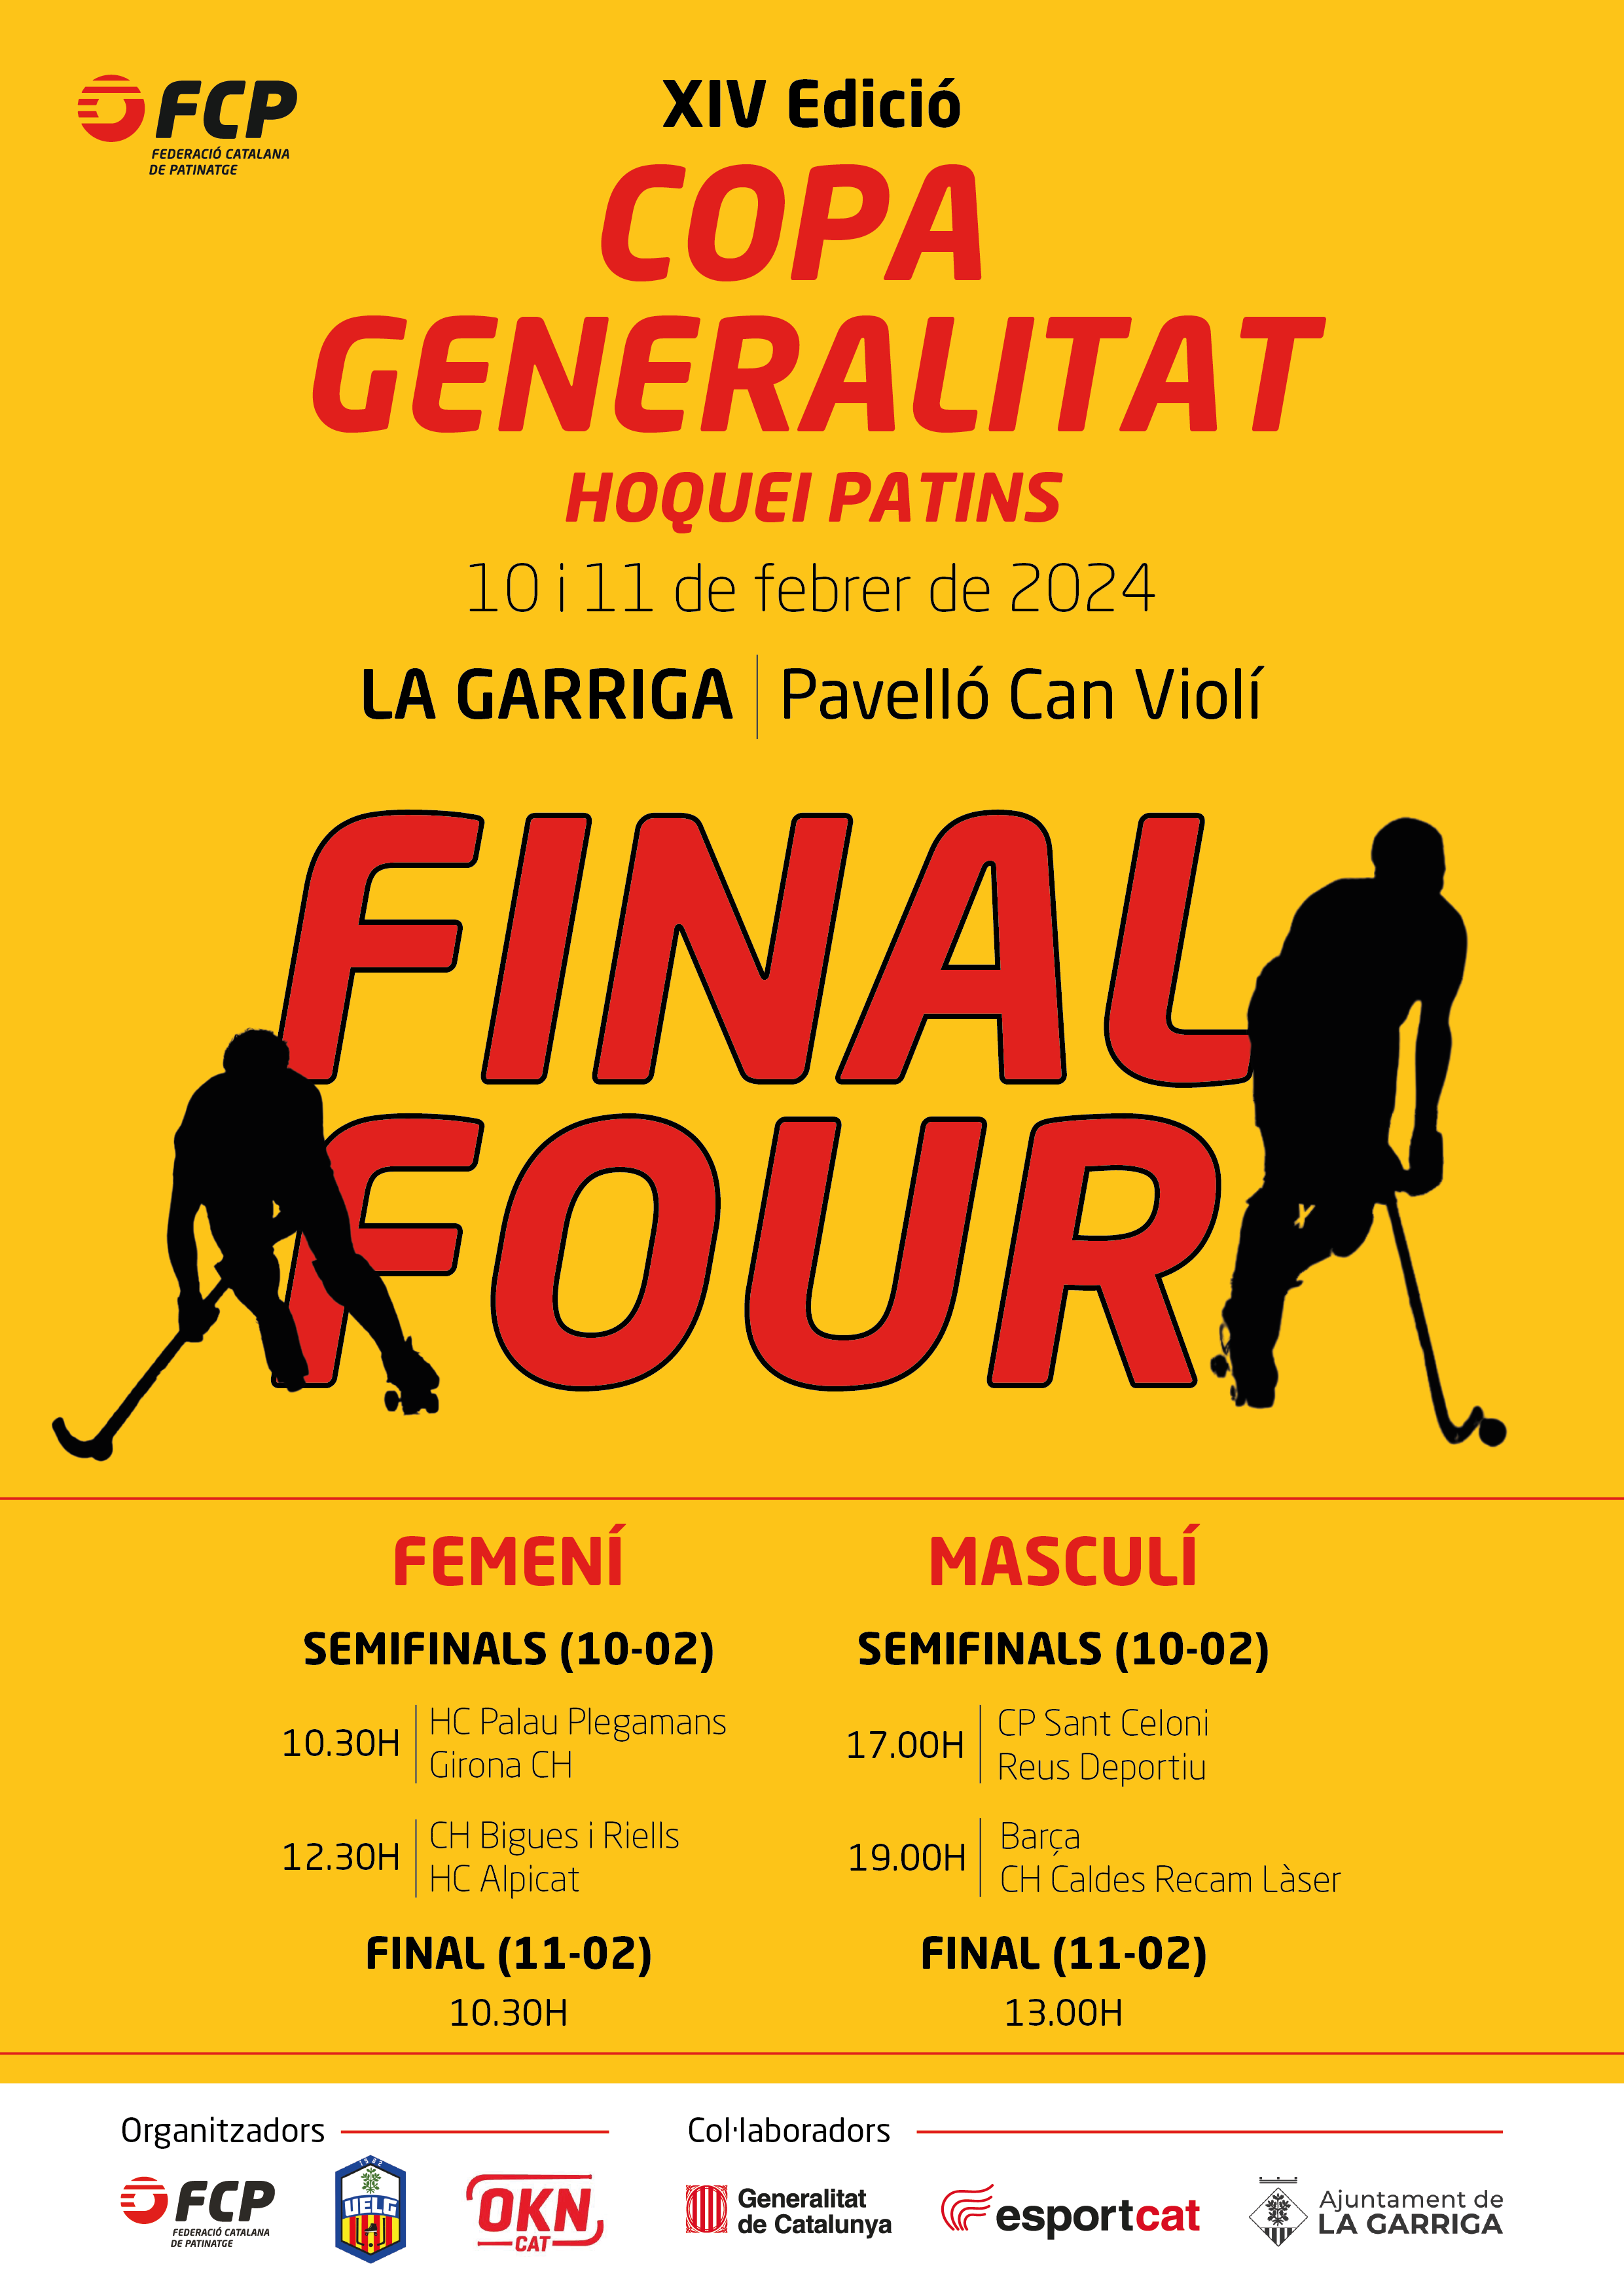 La Garriga, seu de la XIV Copa Generalitat femenina i masculina d'hoquei patins